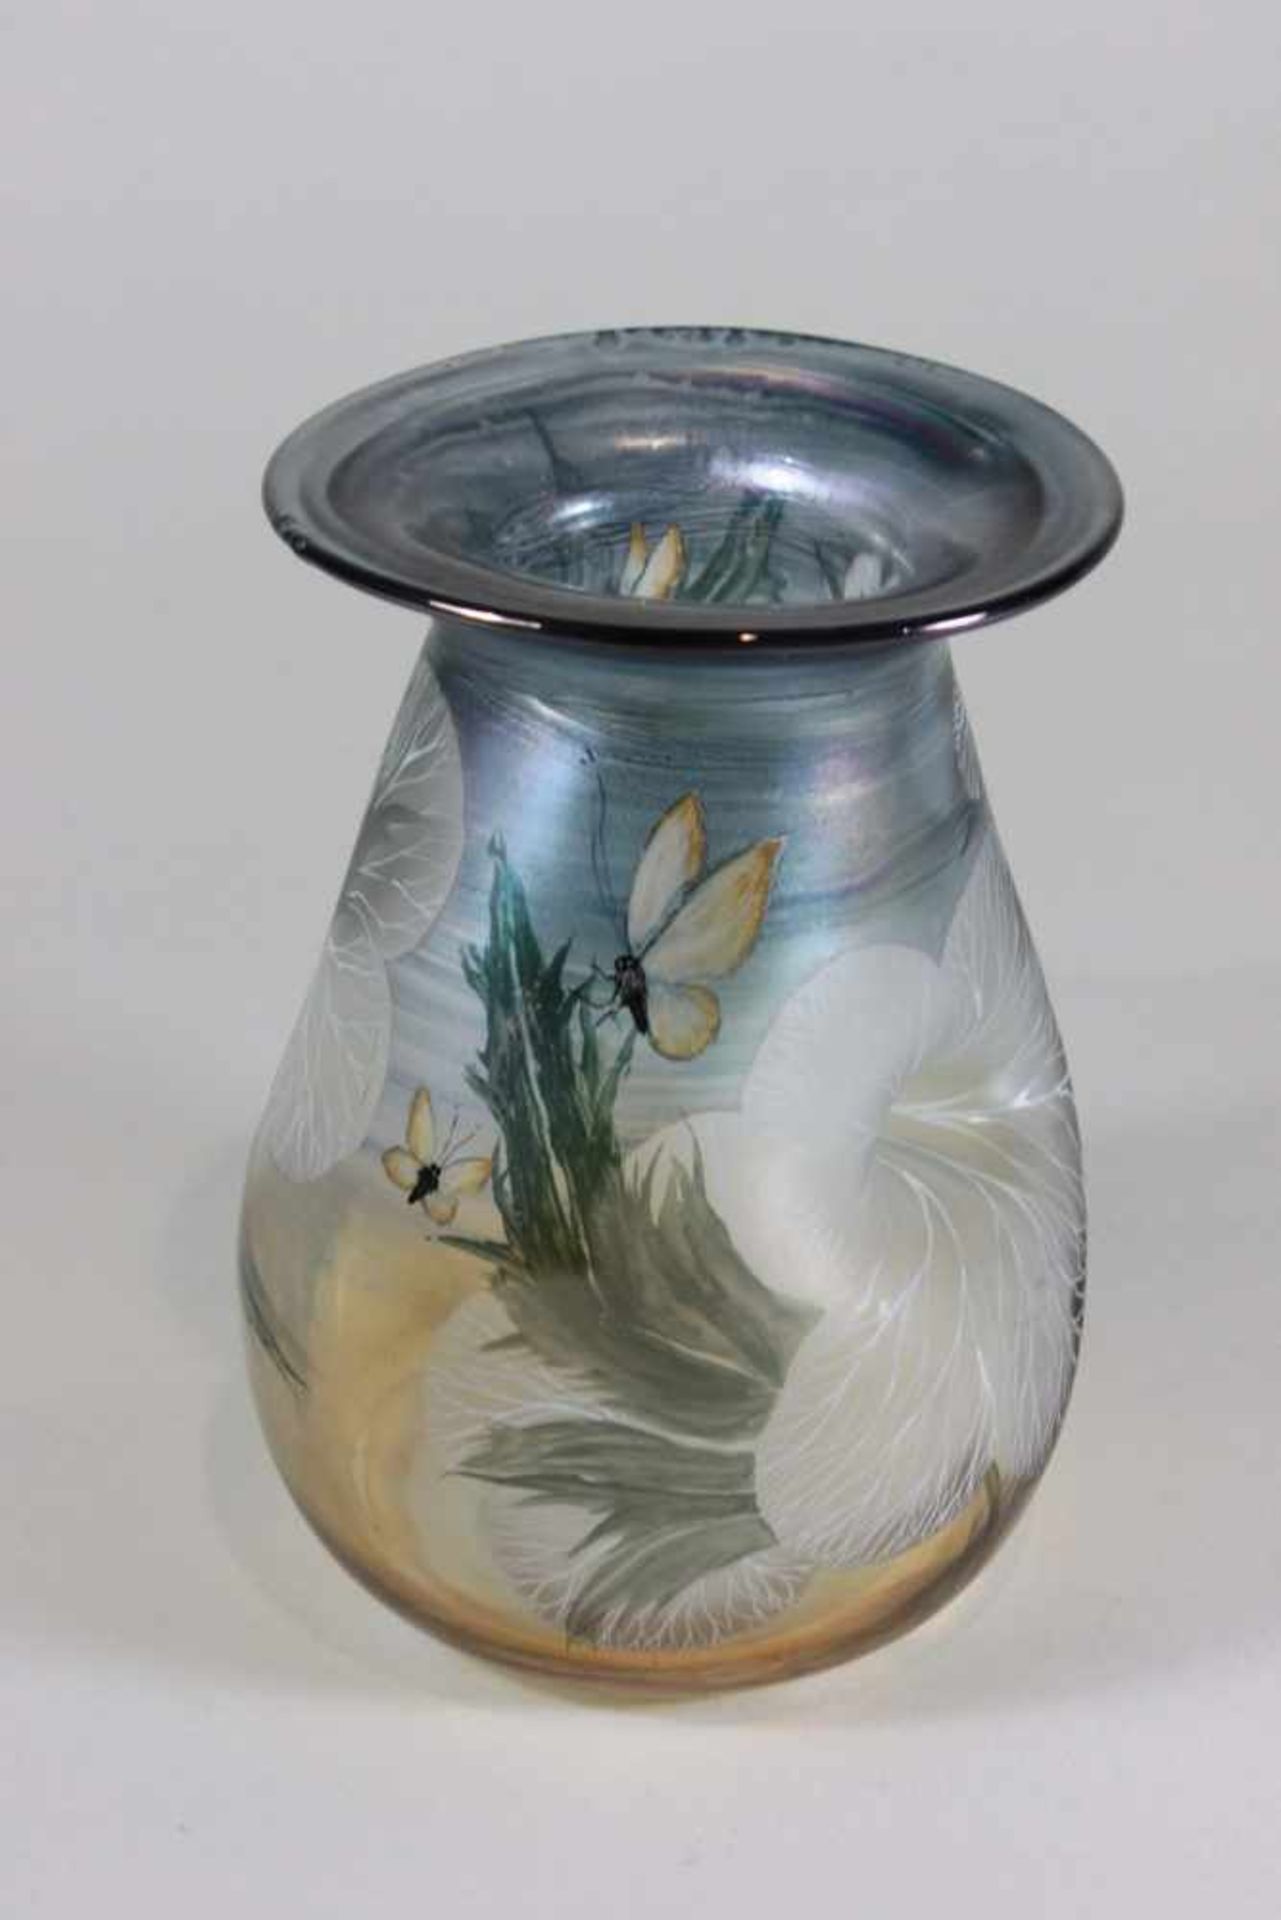 Erwin Eisch Vase Studioglas, signiert und datiert: Eisch 85 B. S., farbloses Glas, nicht durchgehend - Bild 2 aus 3